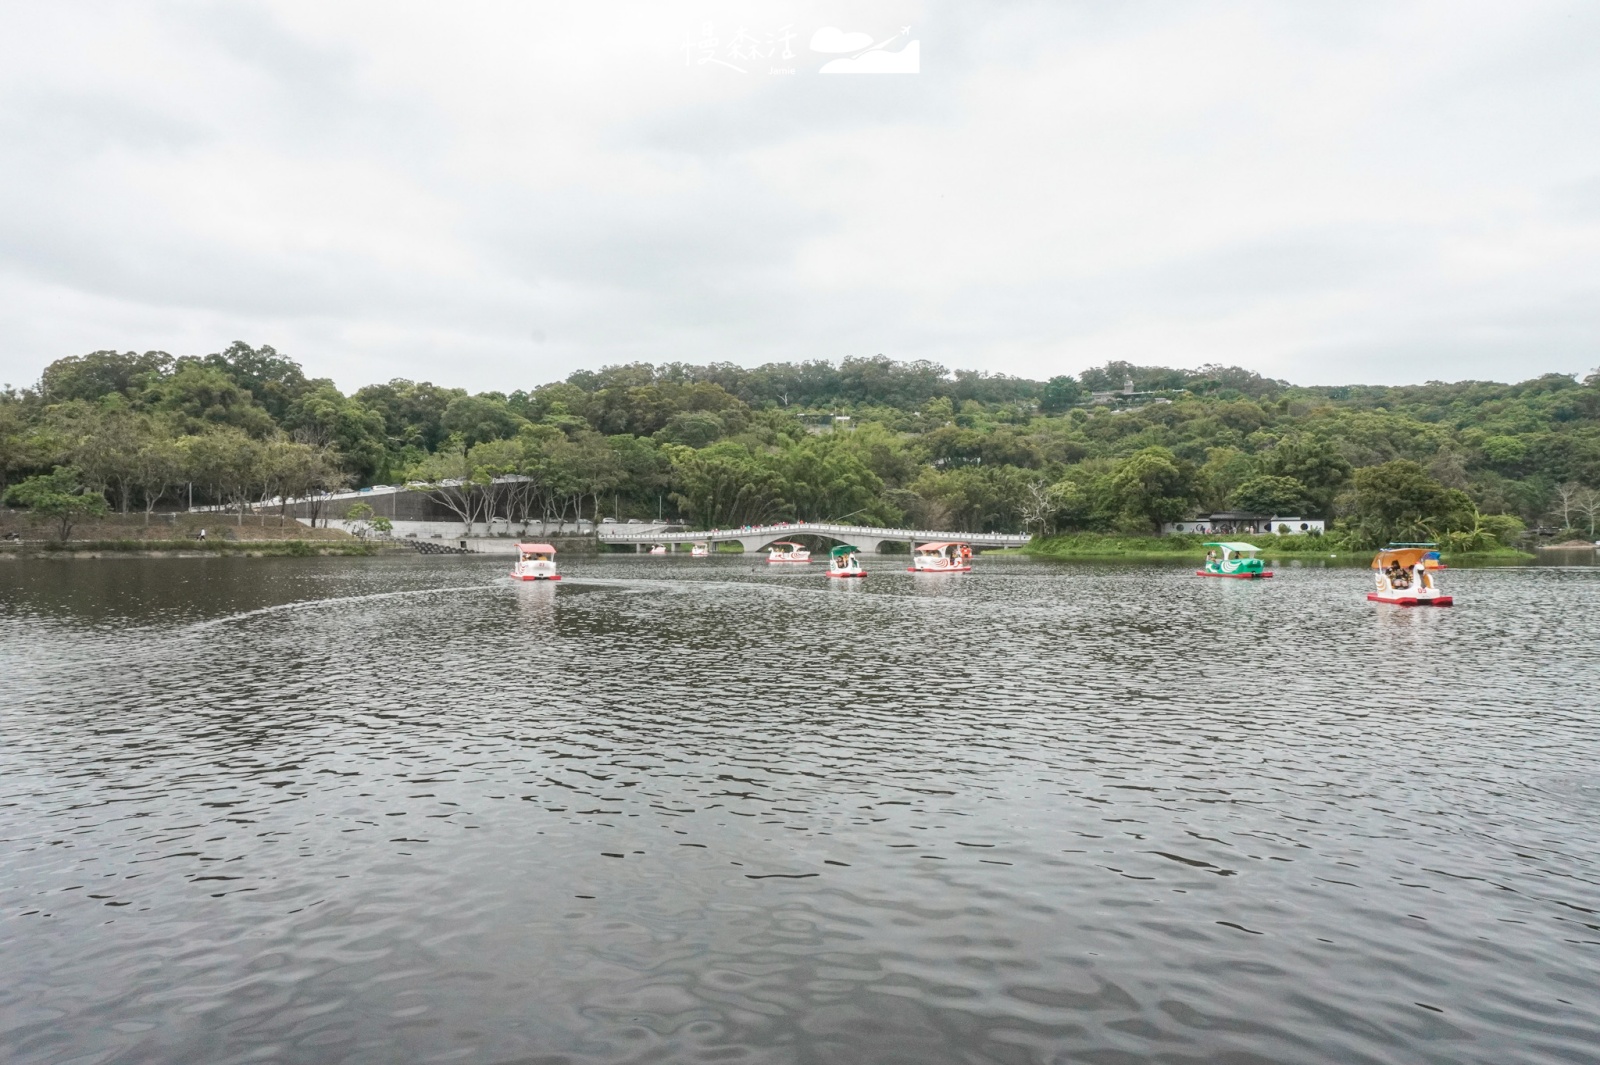 新竹市青草湖 湖上體驗踩踏天鵝船活動